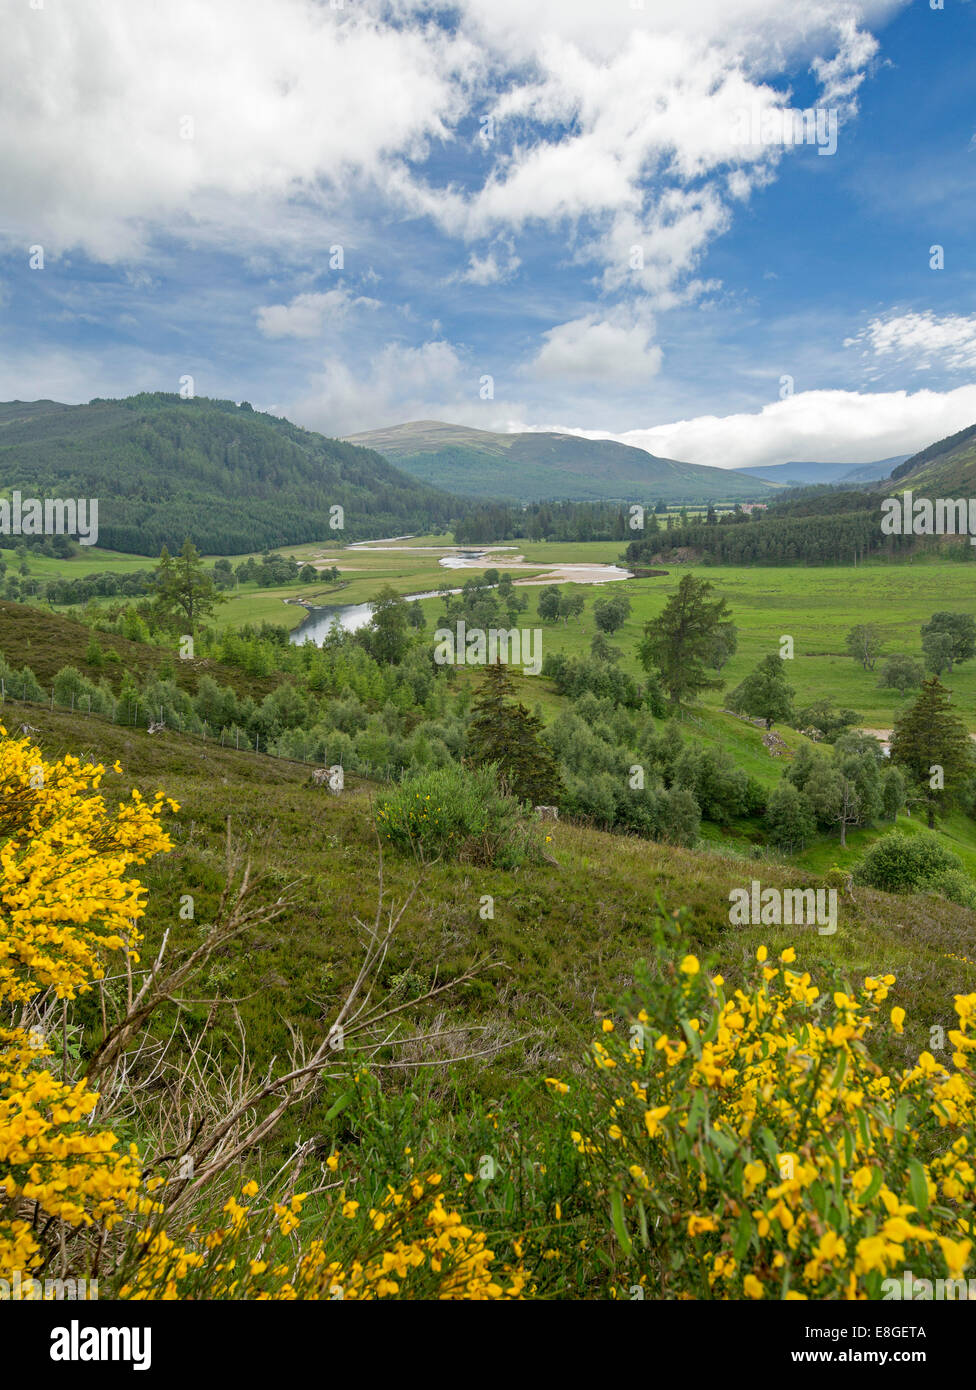 Weite Landschaft im schottischen Hochland mit goldenen Wildblumen, River Dee, grünen Tal, Wälder & Bergen unter blauem Himmel Stockfoto